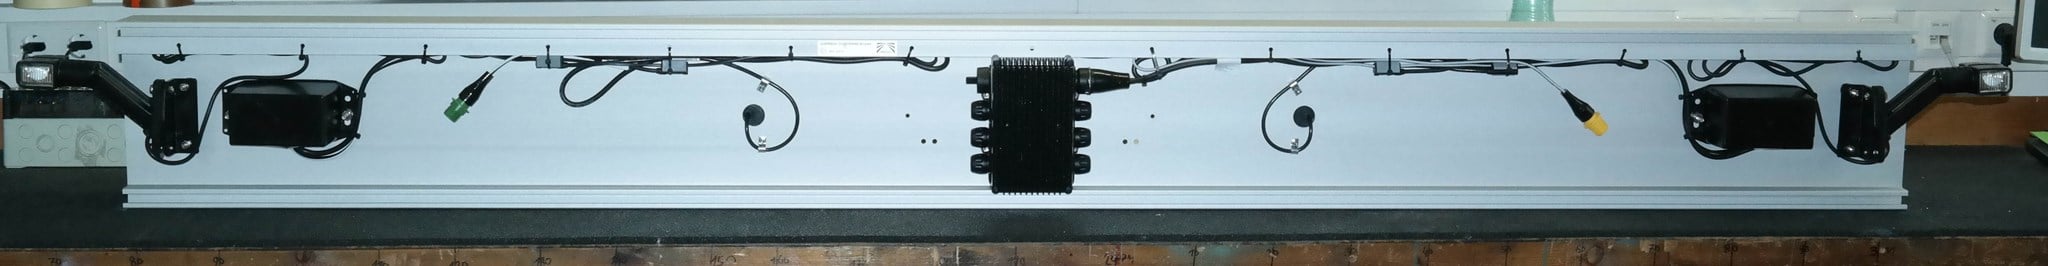 Bild von 97-1198-007C Aspöck ALU Unterfahrschutz eloxiert Europoint III Voll LED, Superpoint IV